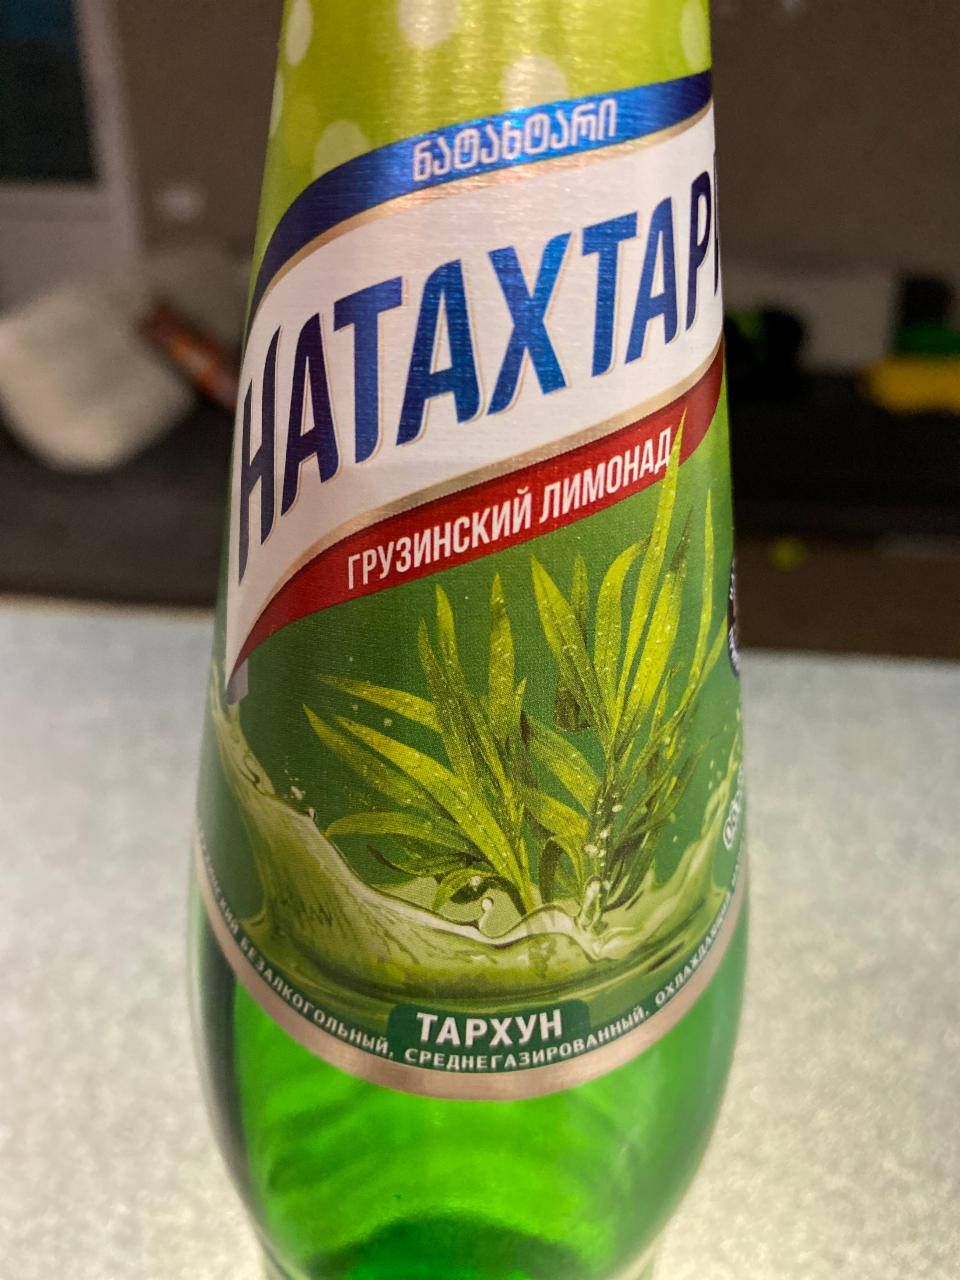 Фото - Напиток безалкогольный среднегазированный Грузинский лимонад тархун Натахтари